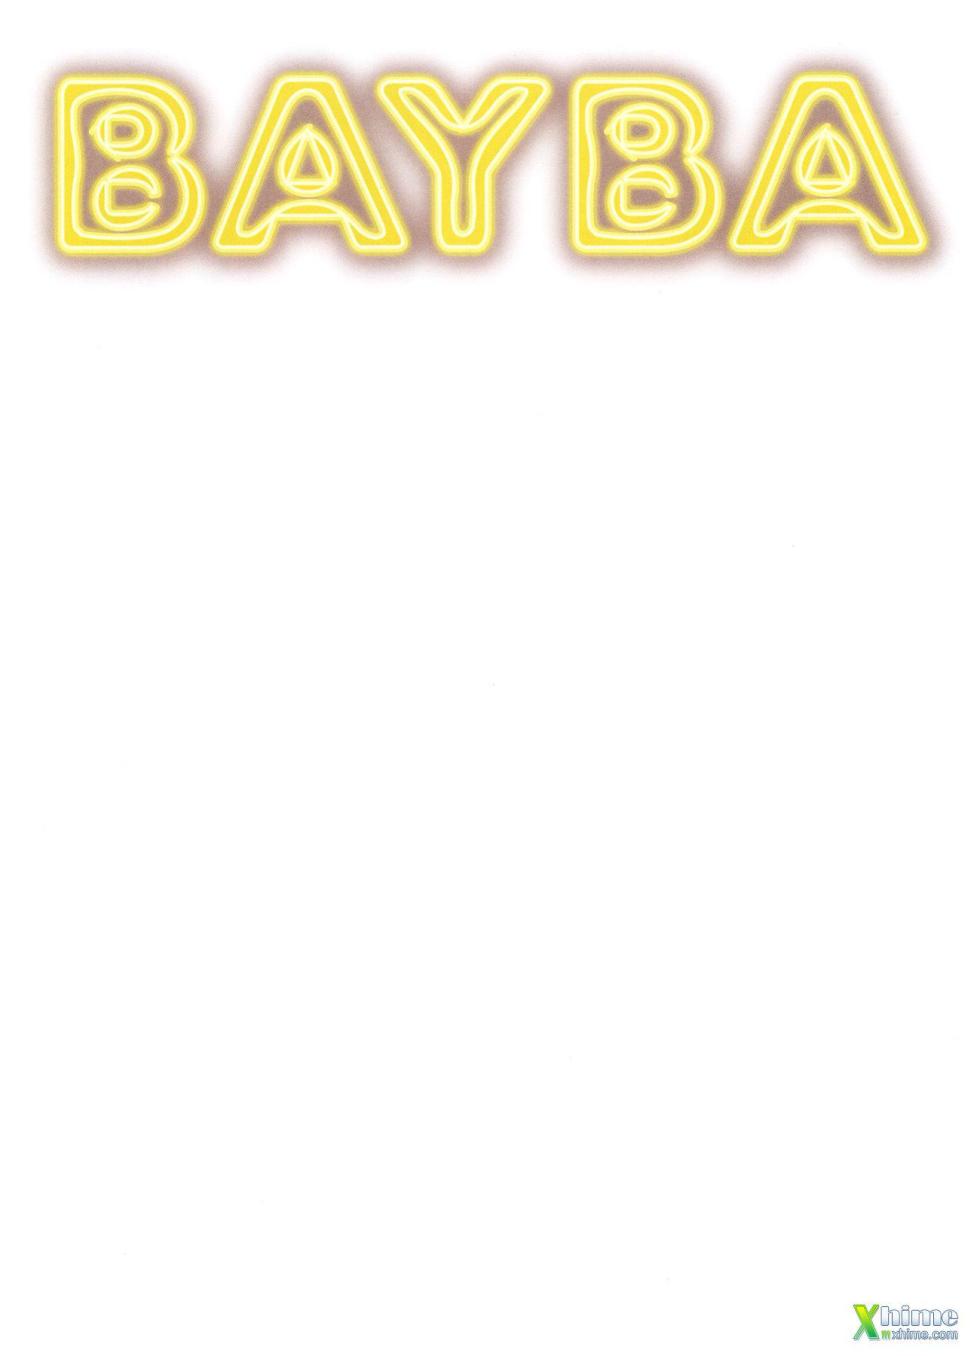 Bayba_the_110_bj’s_(Baldazzini) - Page 2